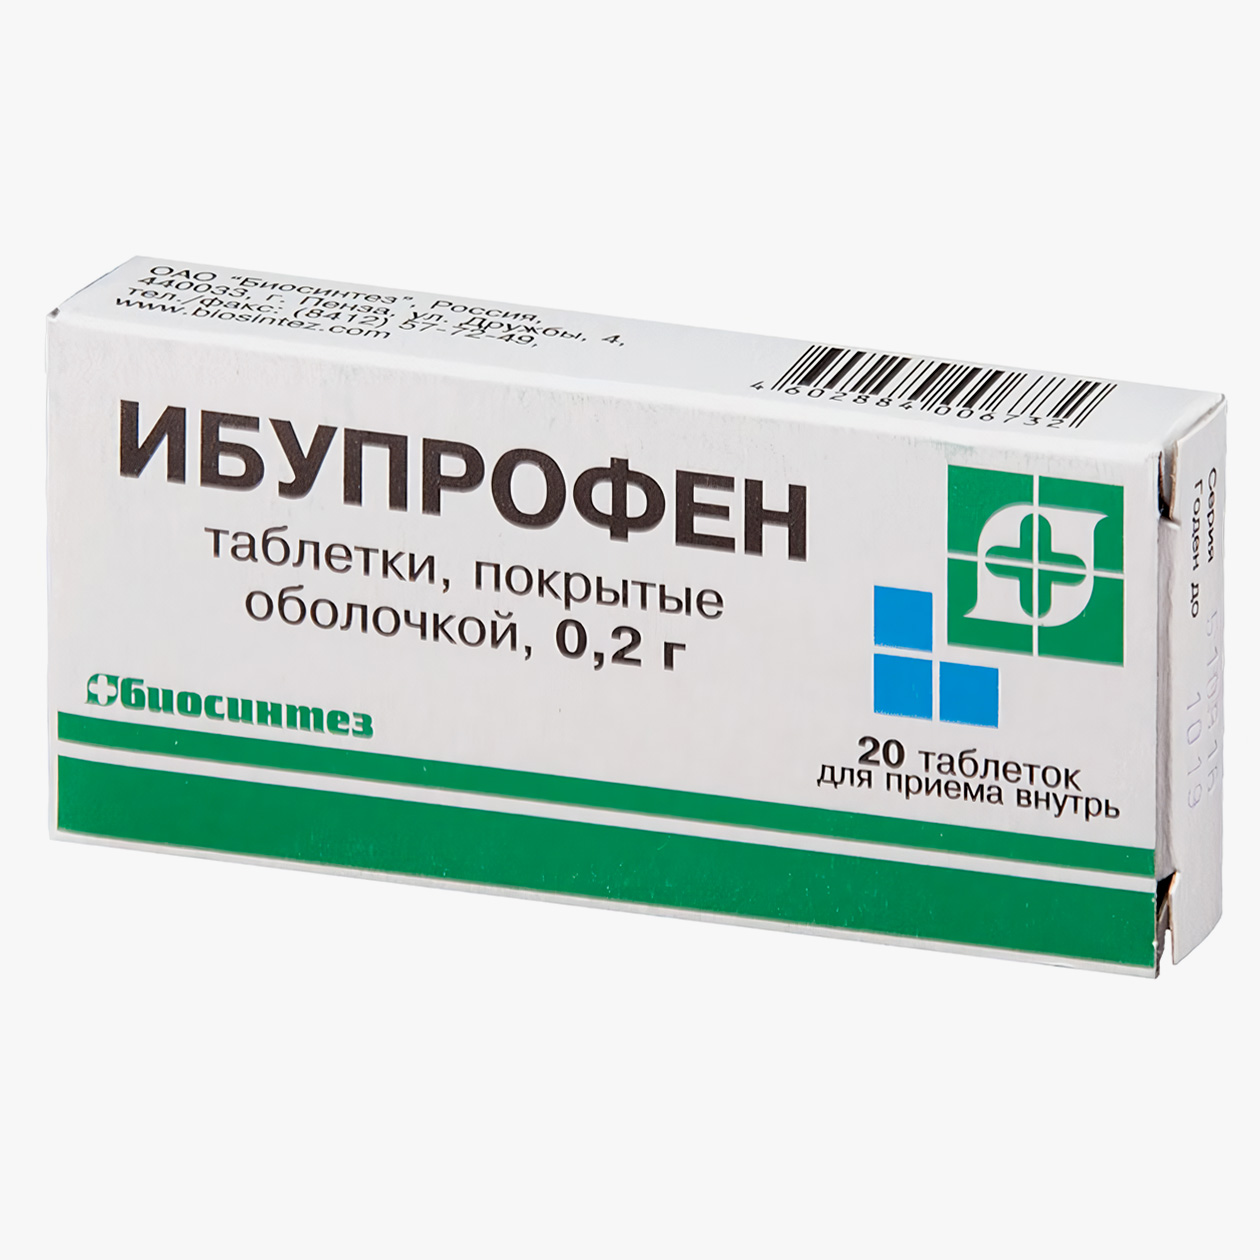 Цена за 20 таблеток 400 мг ибупрофена начинается от 51 ₽, цена за 20 таблеток 200 мг — от 17 ₽